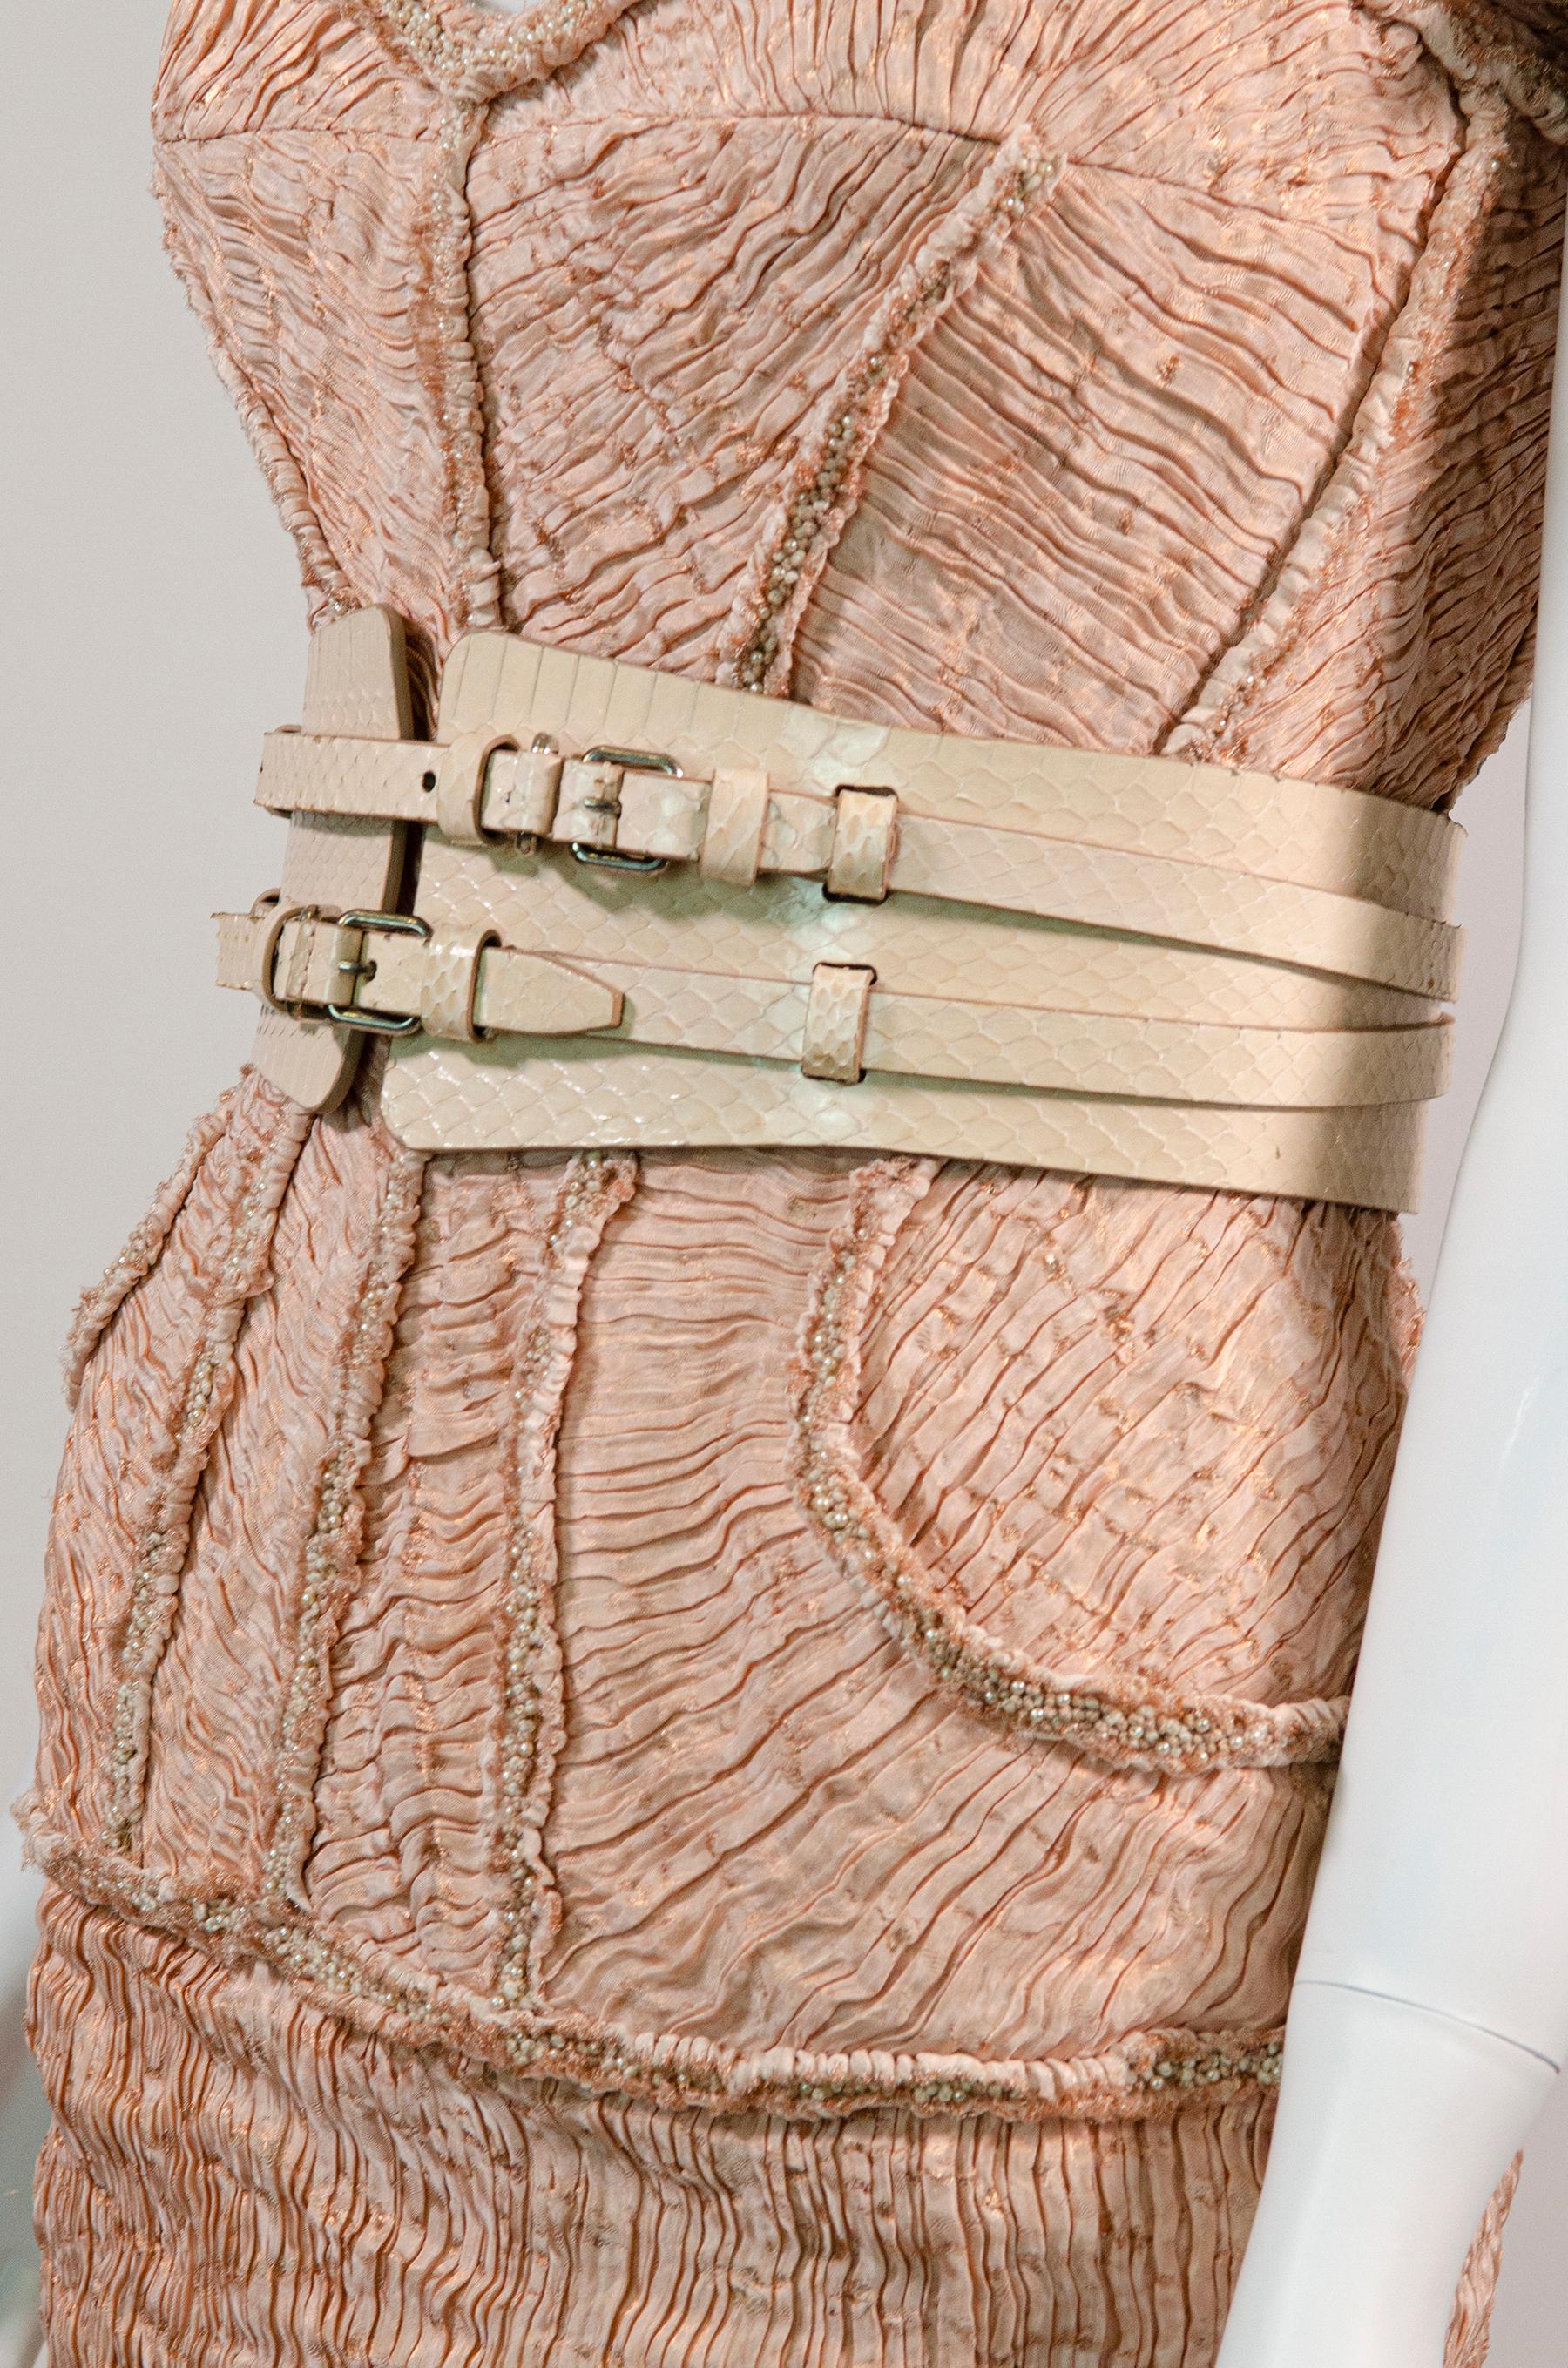 ALEXANDER MCQUEEN Rare F/W 2012 Rare Runway Silk Dress With Belt 2